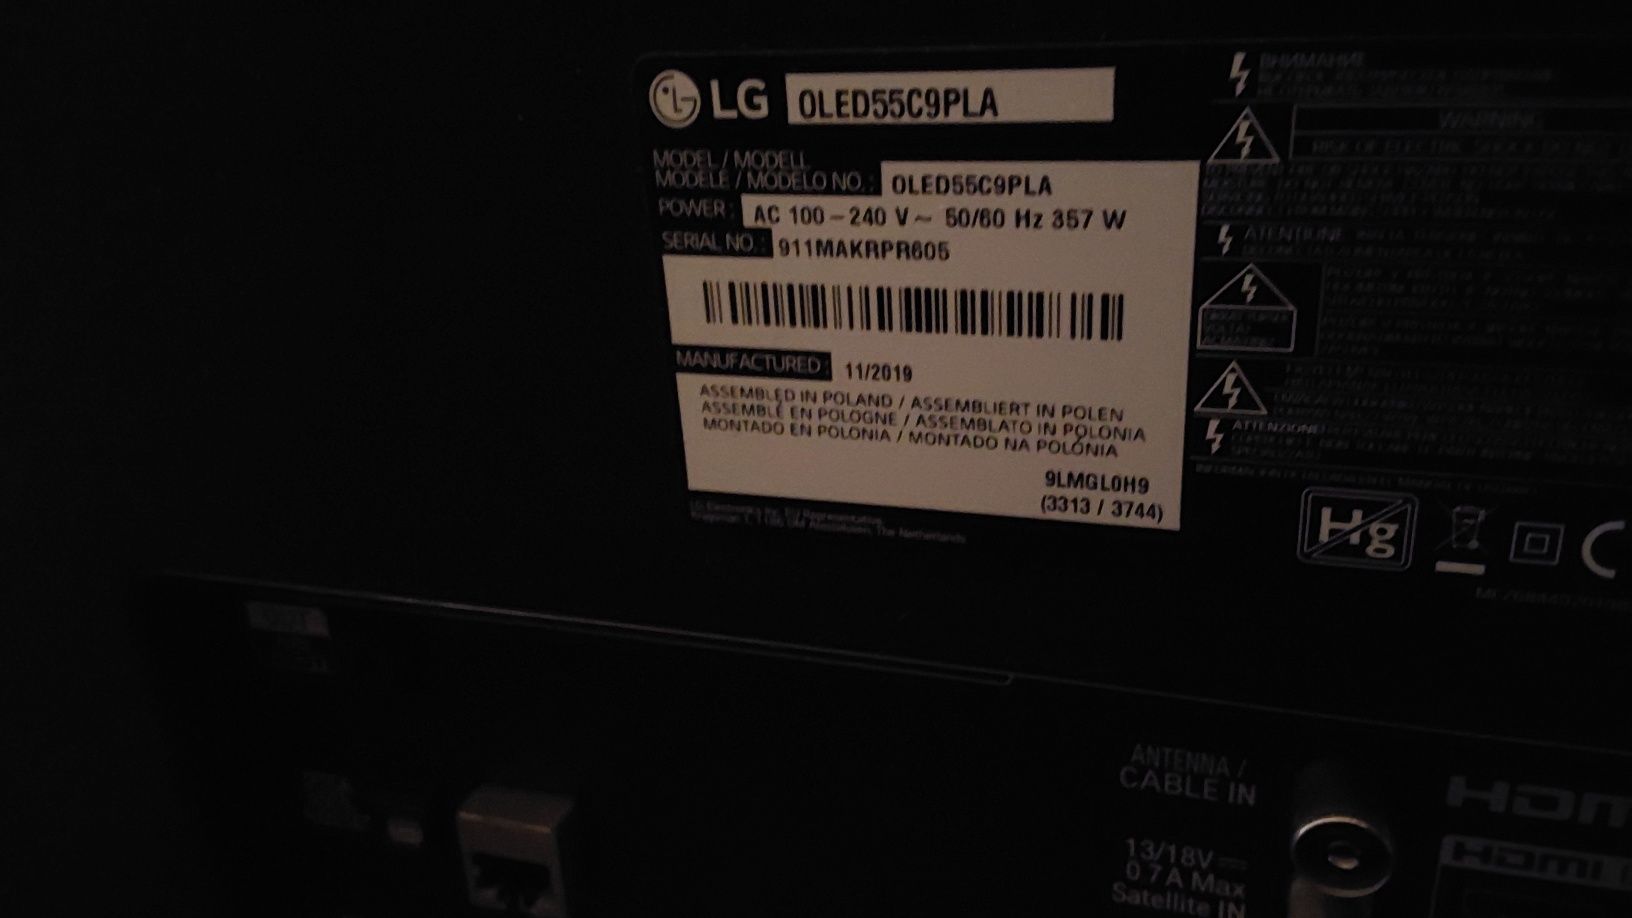 LG OLED 55 C9 pla